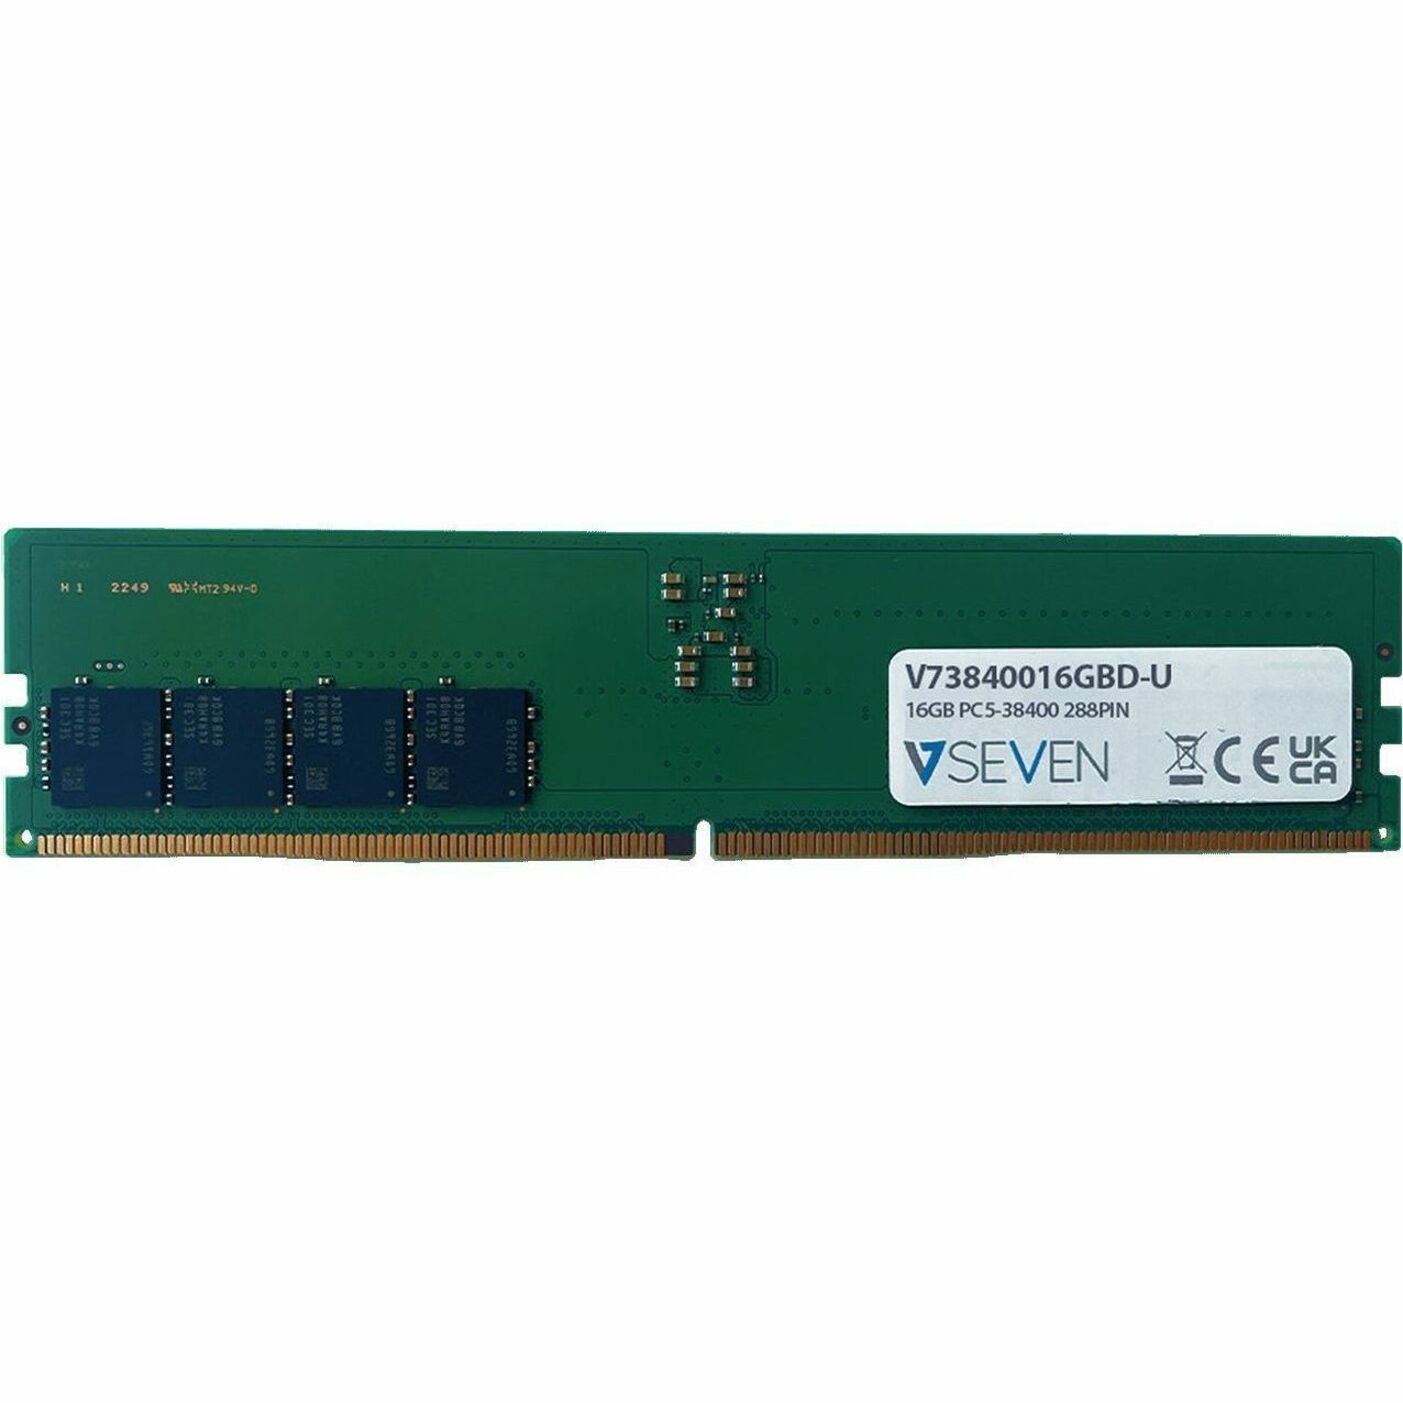 V7 V73840016GBD-U 16GB DDR5 SDRAM Memory Module, Lifetime Warranty, CL40, 4800 MHz, Unbuffered